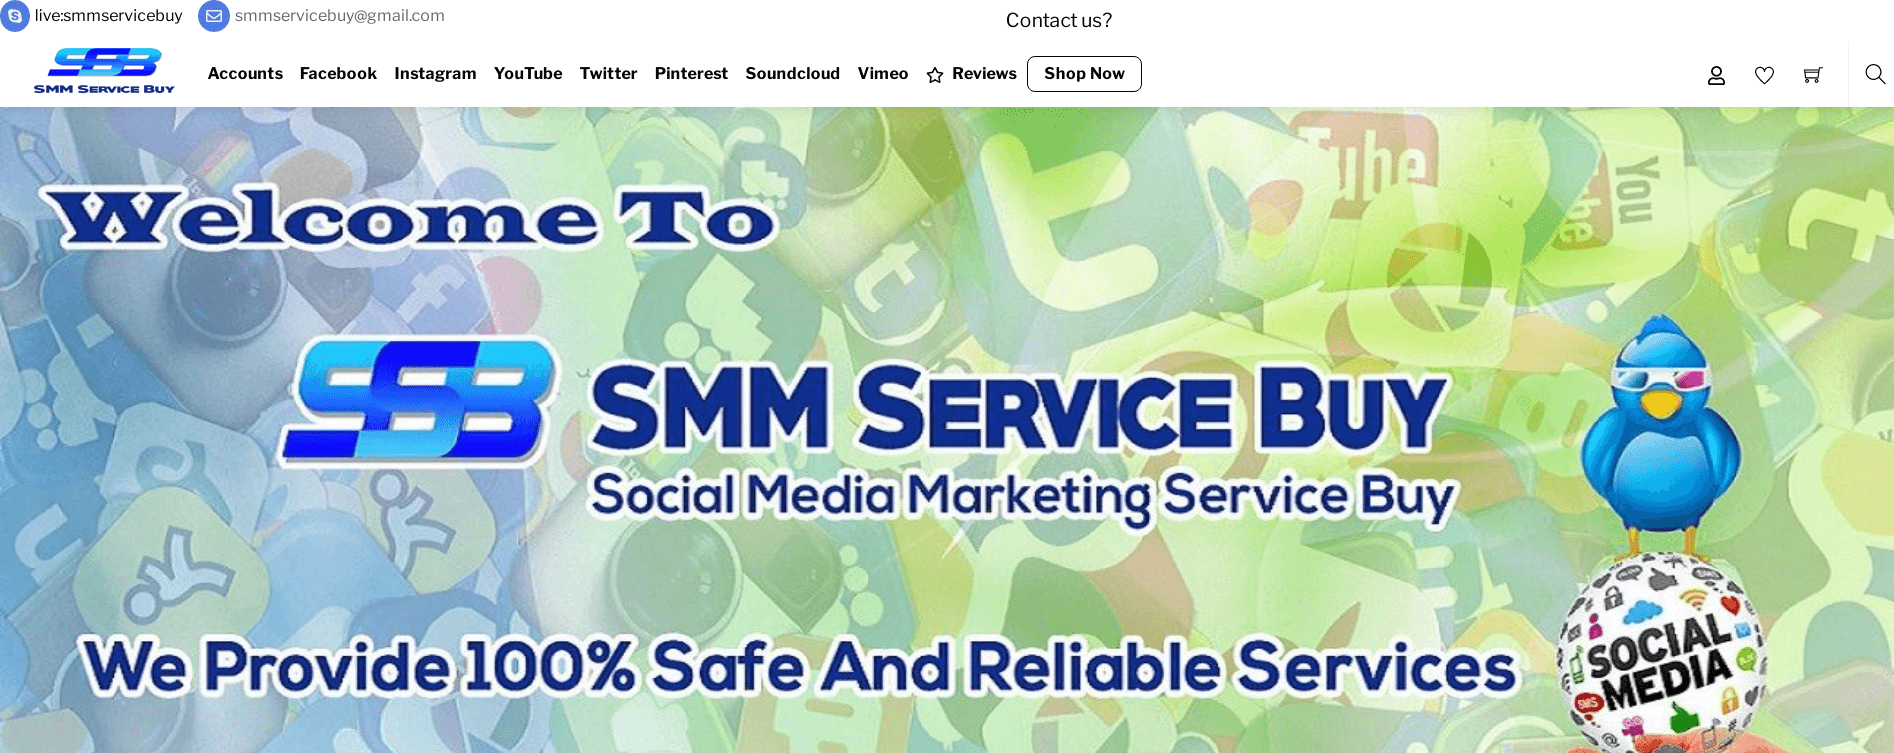 smm-service-buy-interface